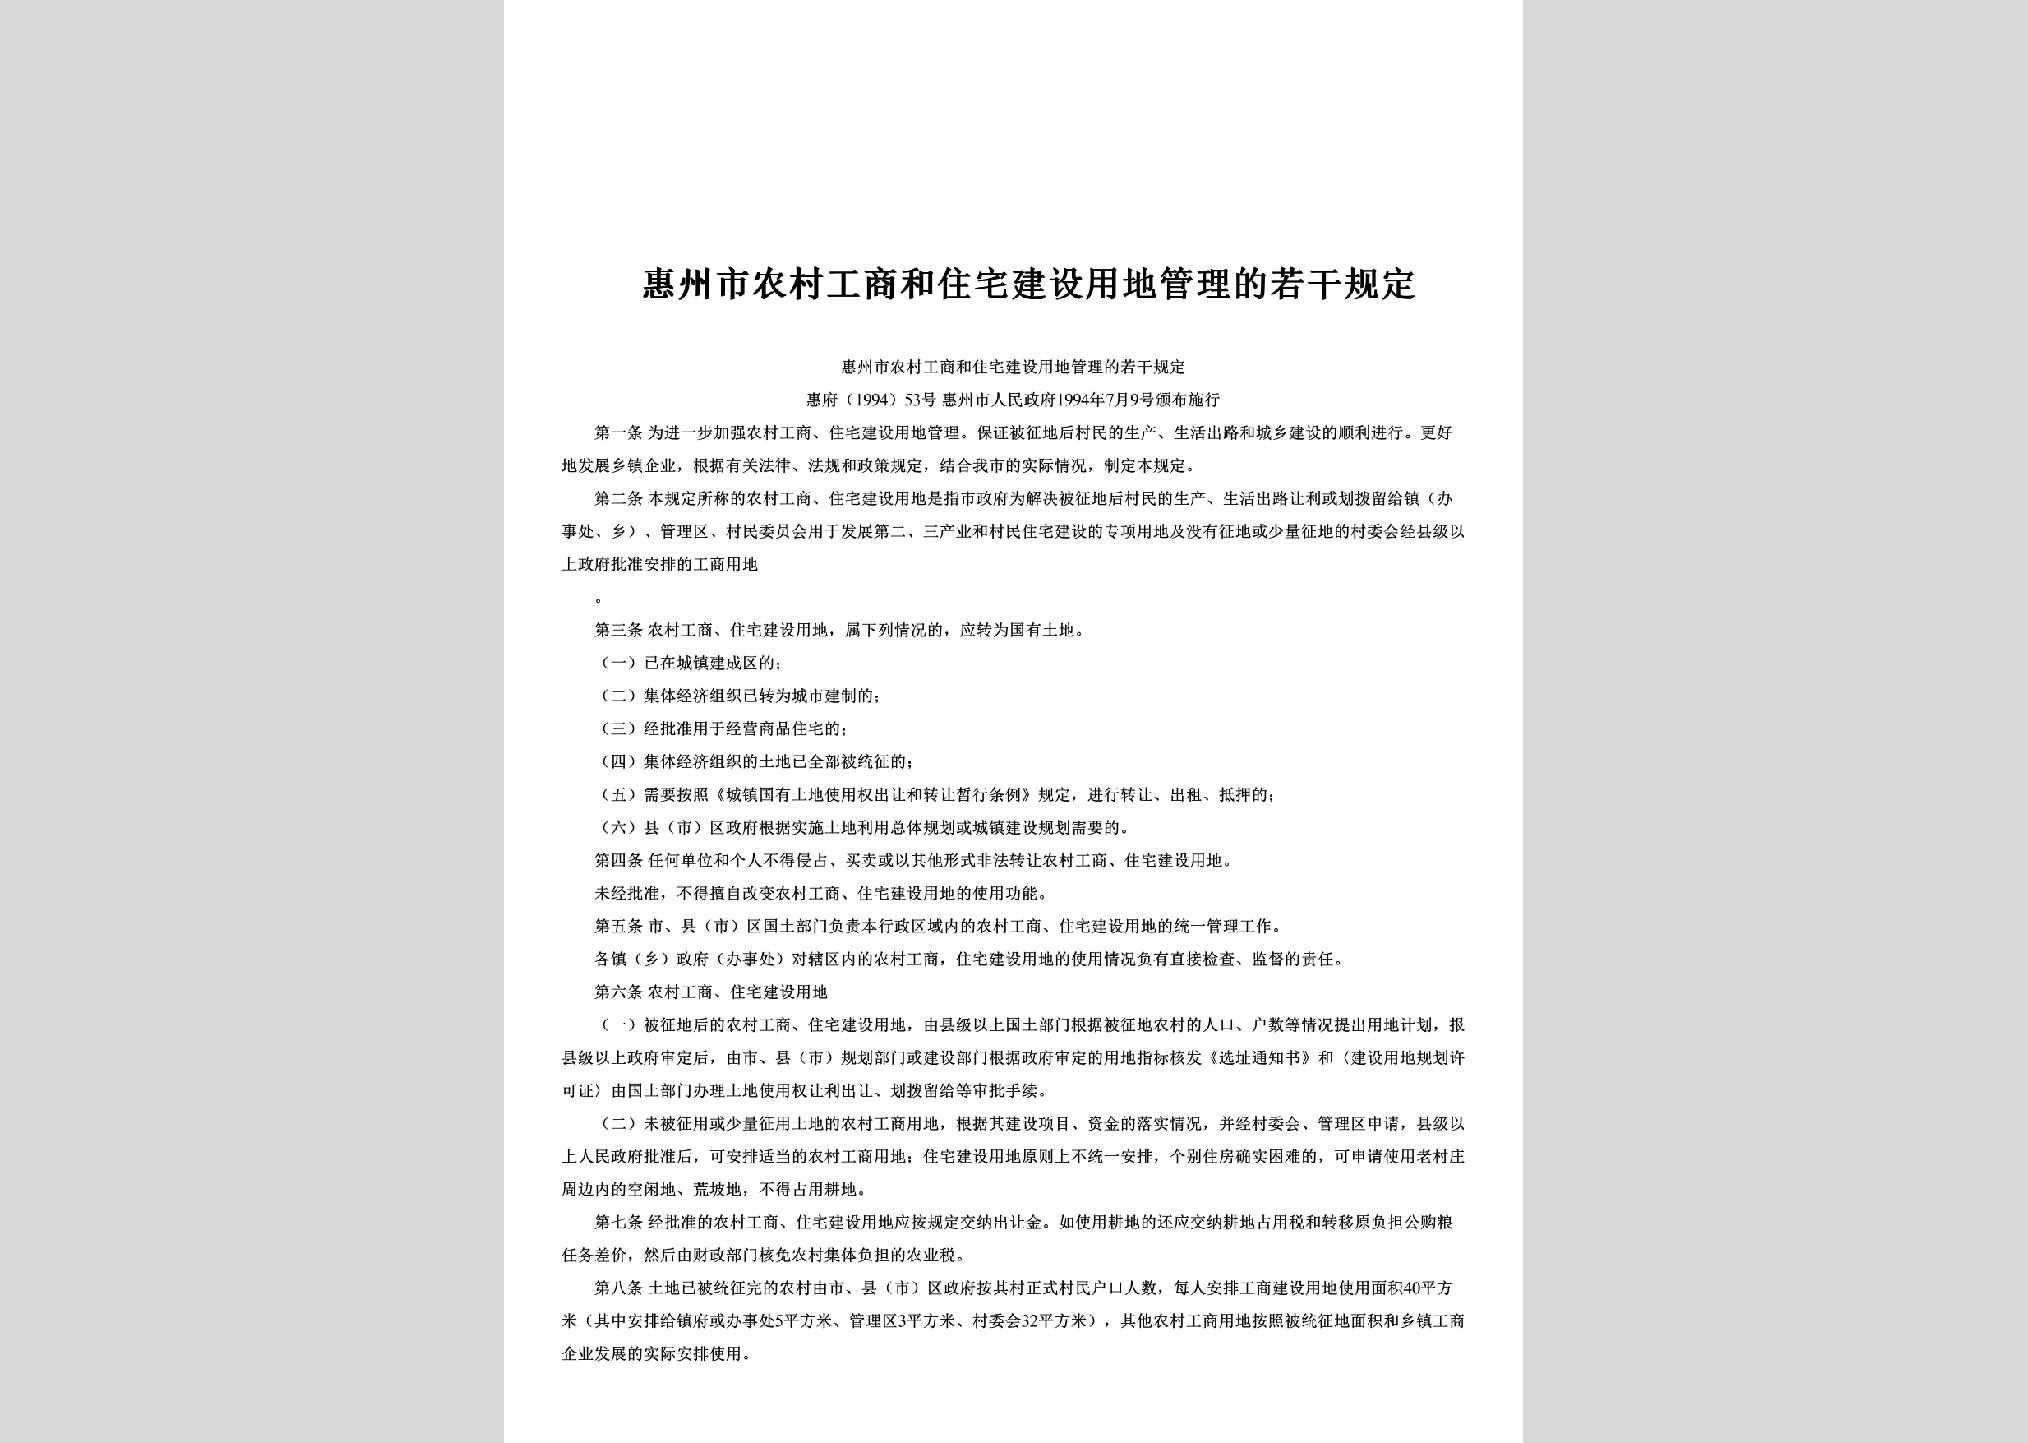 惠府[1994]53号：惠州市农村工商和住宅建设用地管理的若干规定